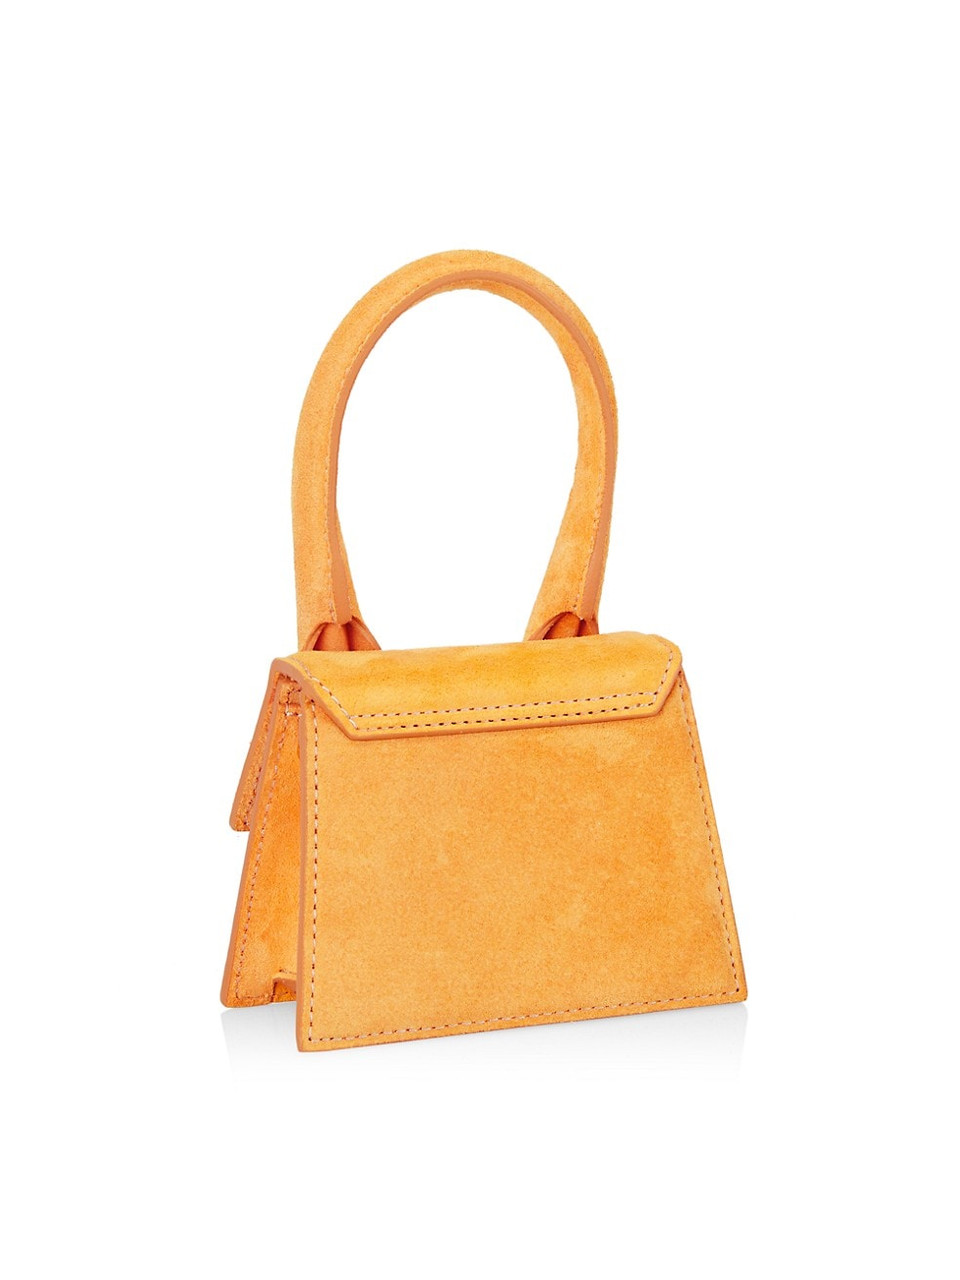 Jacquemus Women Le Chiquito Mini Tote Bag In Orange Suede Leather